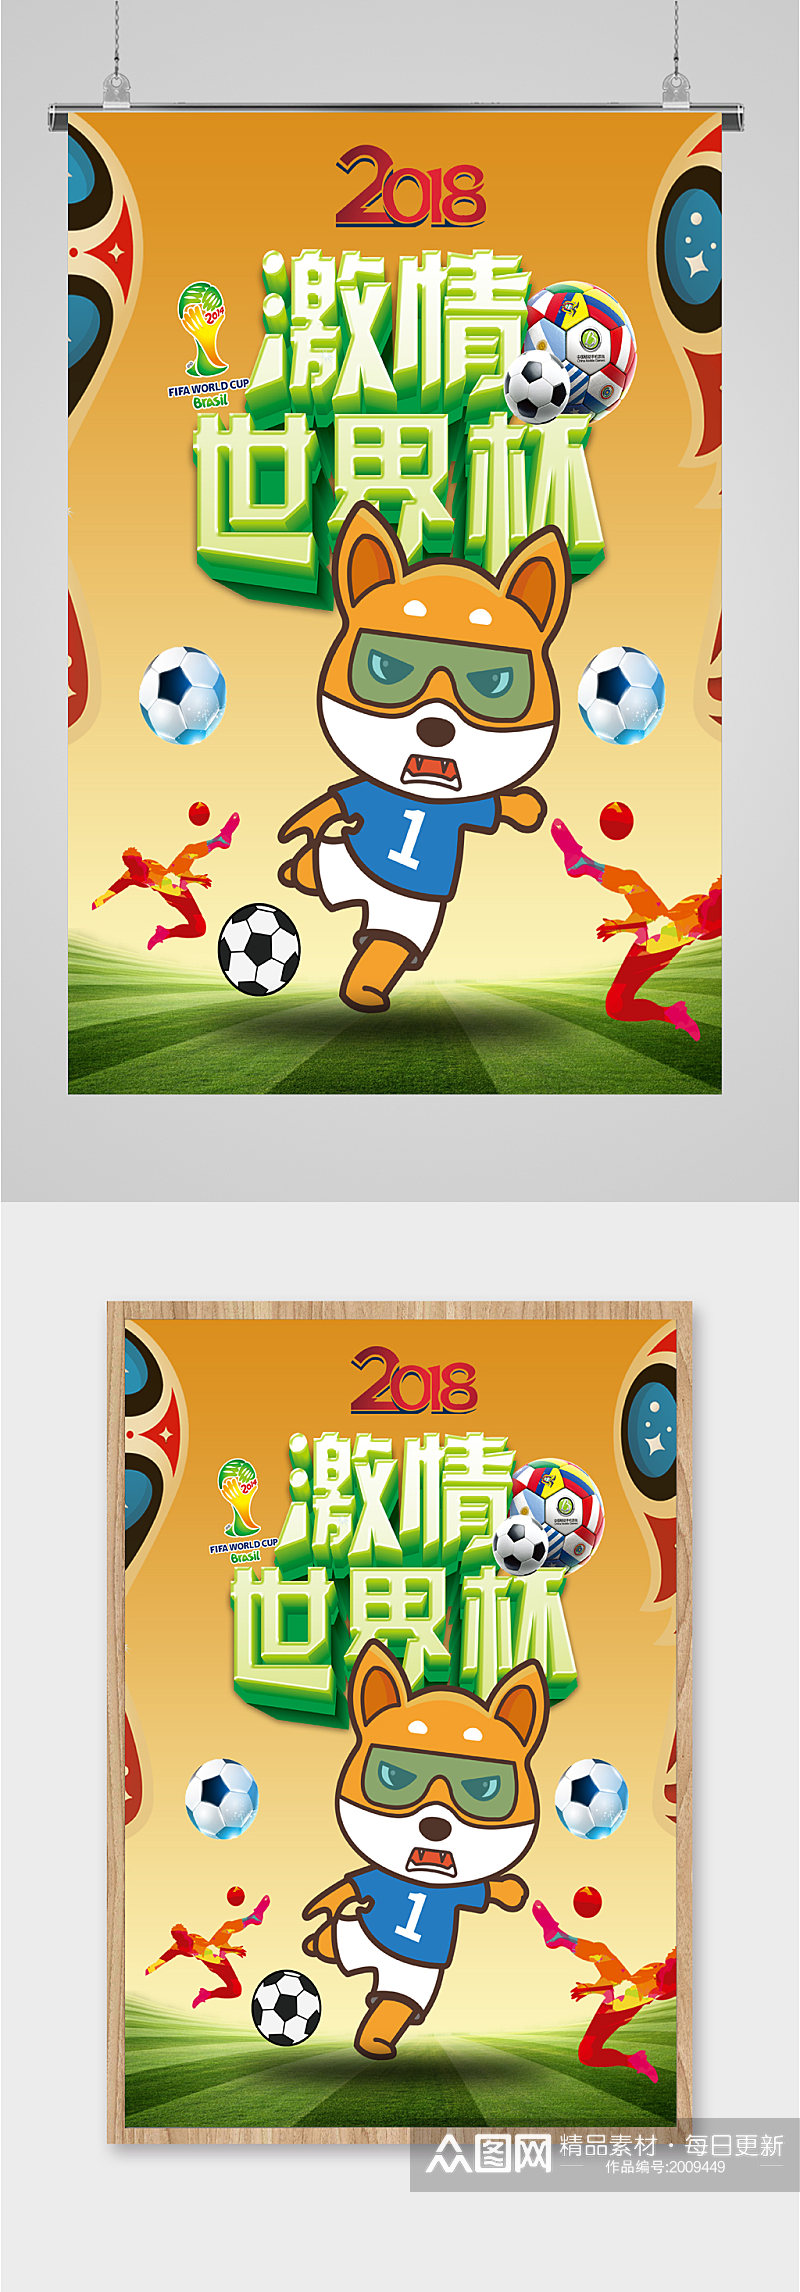 激情世界杯宣传海报素材